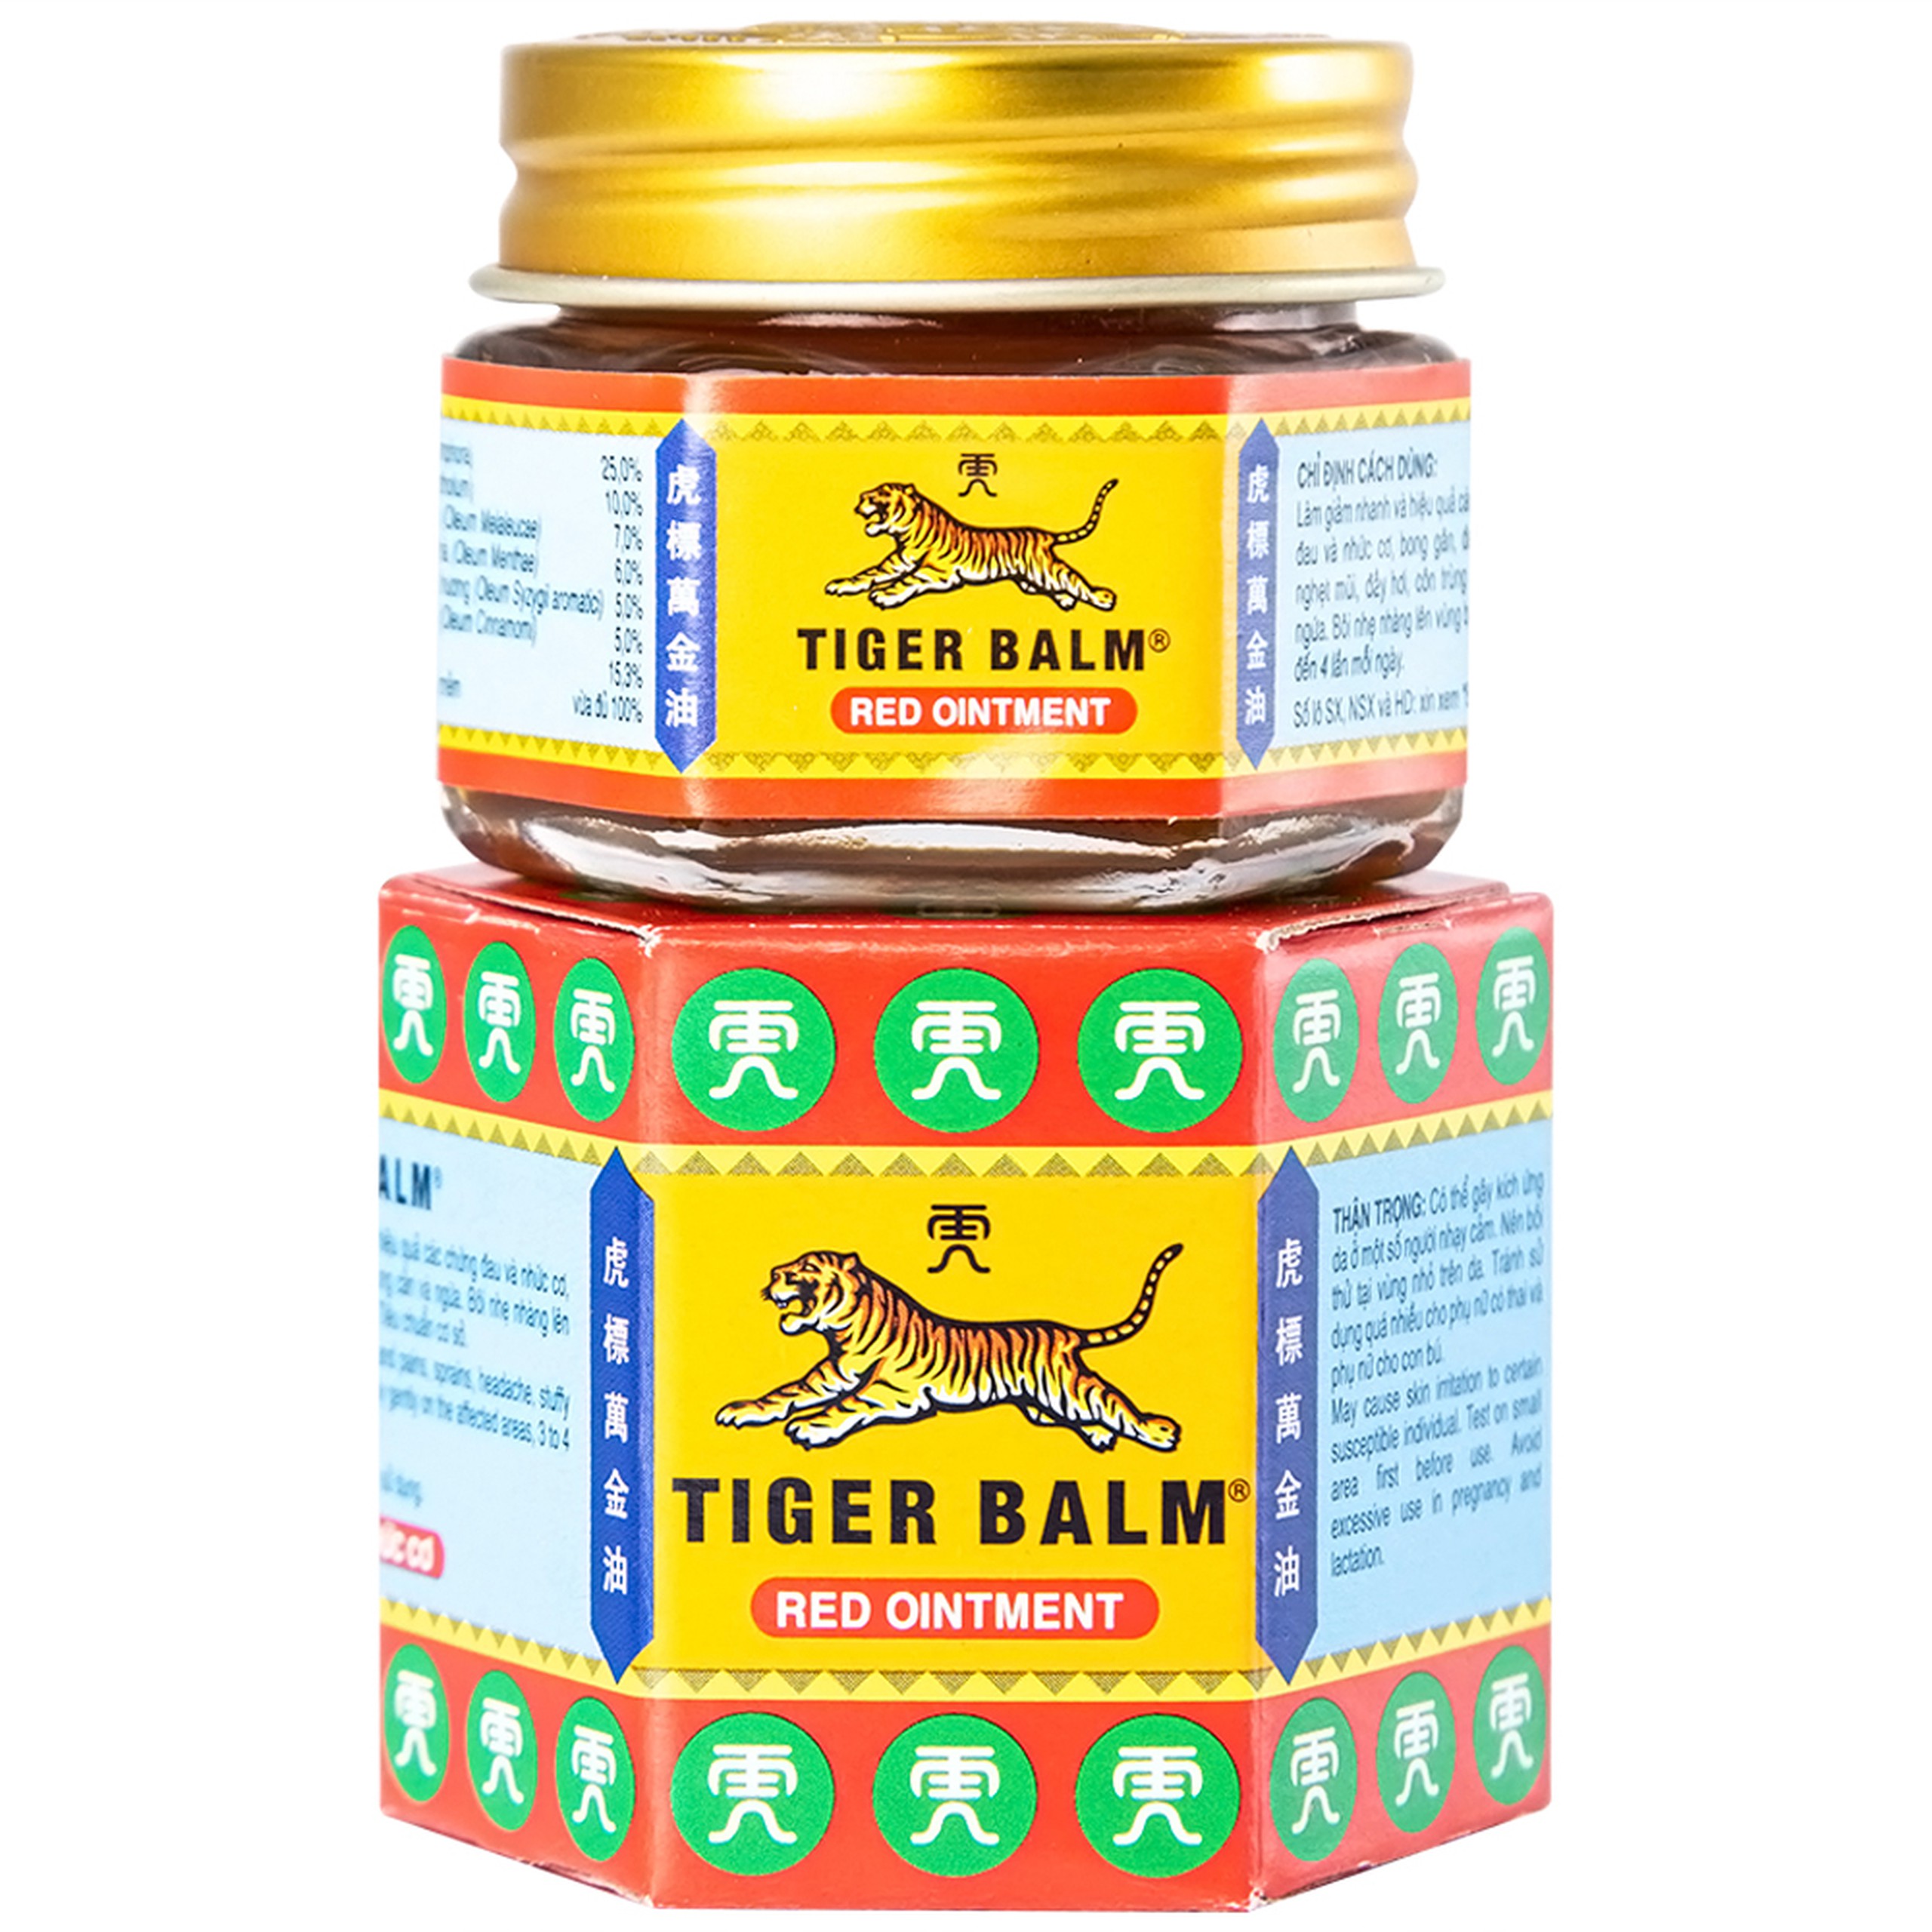 Thuốc mỡ Tiger Balm Red Ointment Haw Par giảm đau và nhức cơ, bong gân (19,4g)